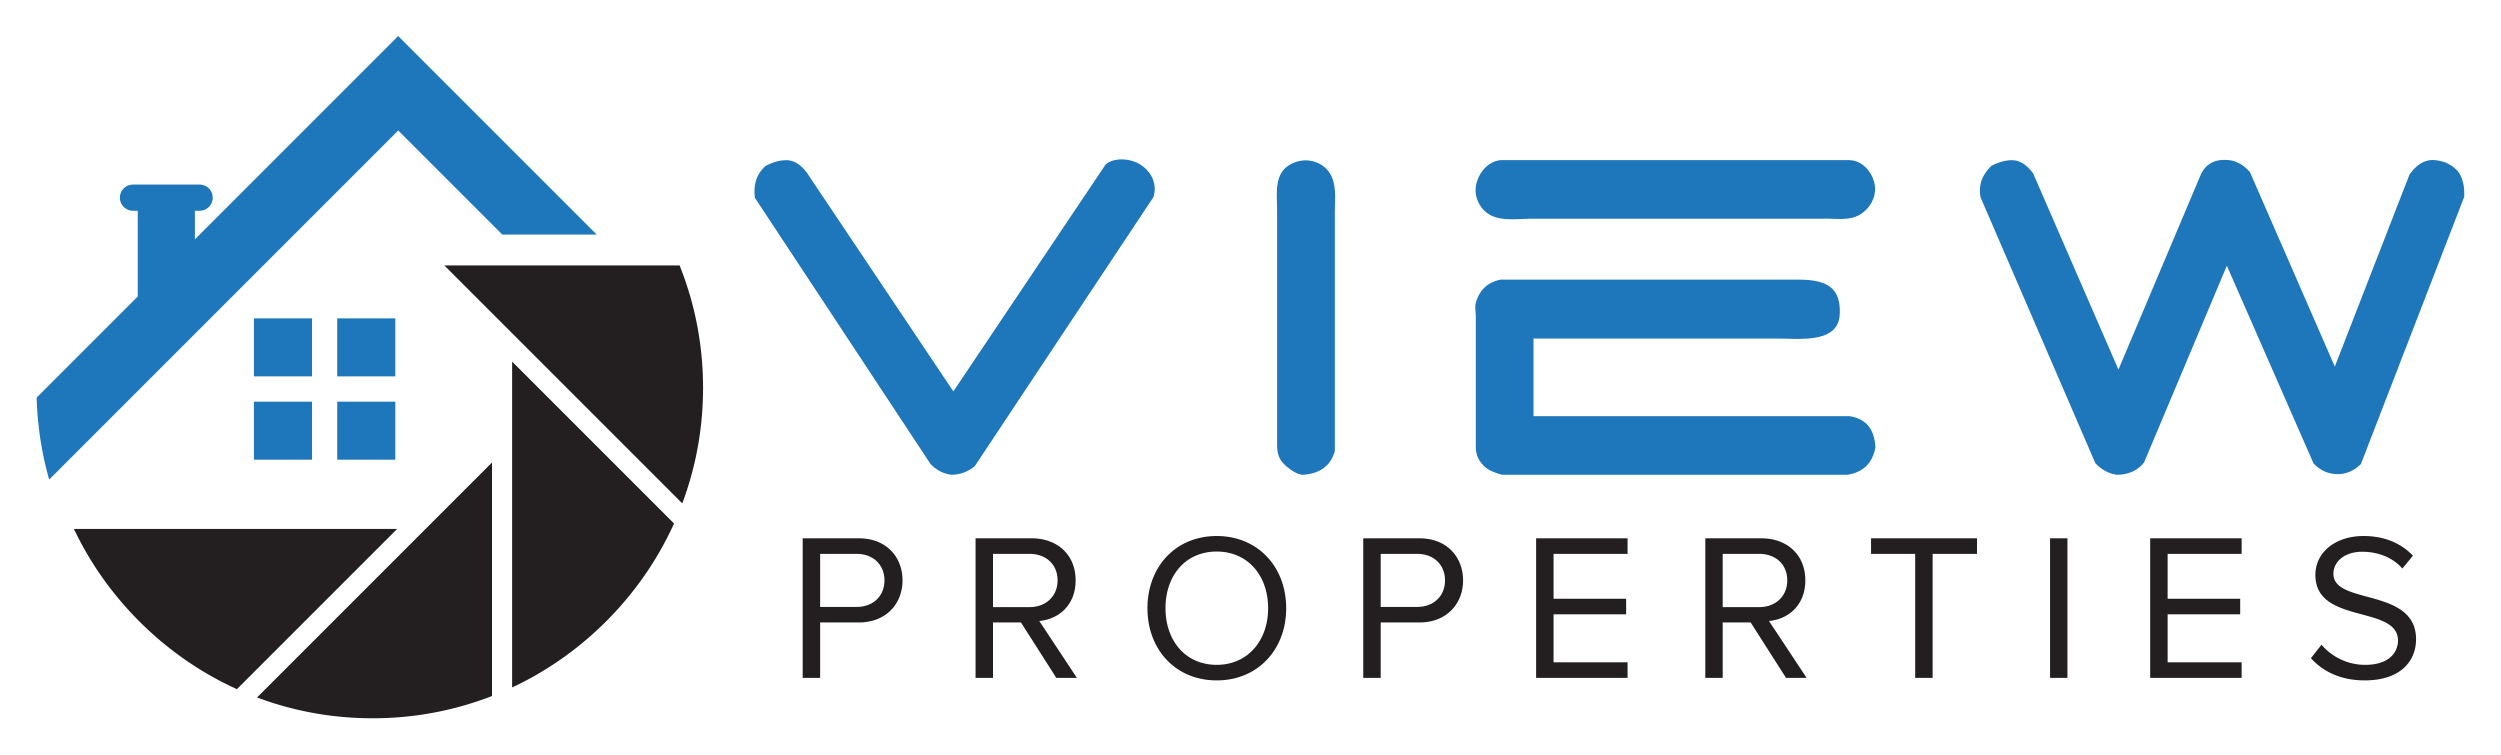 View Properties logo Charleston